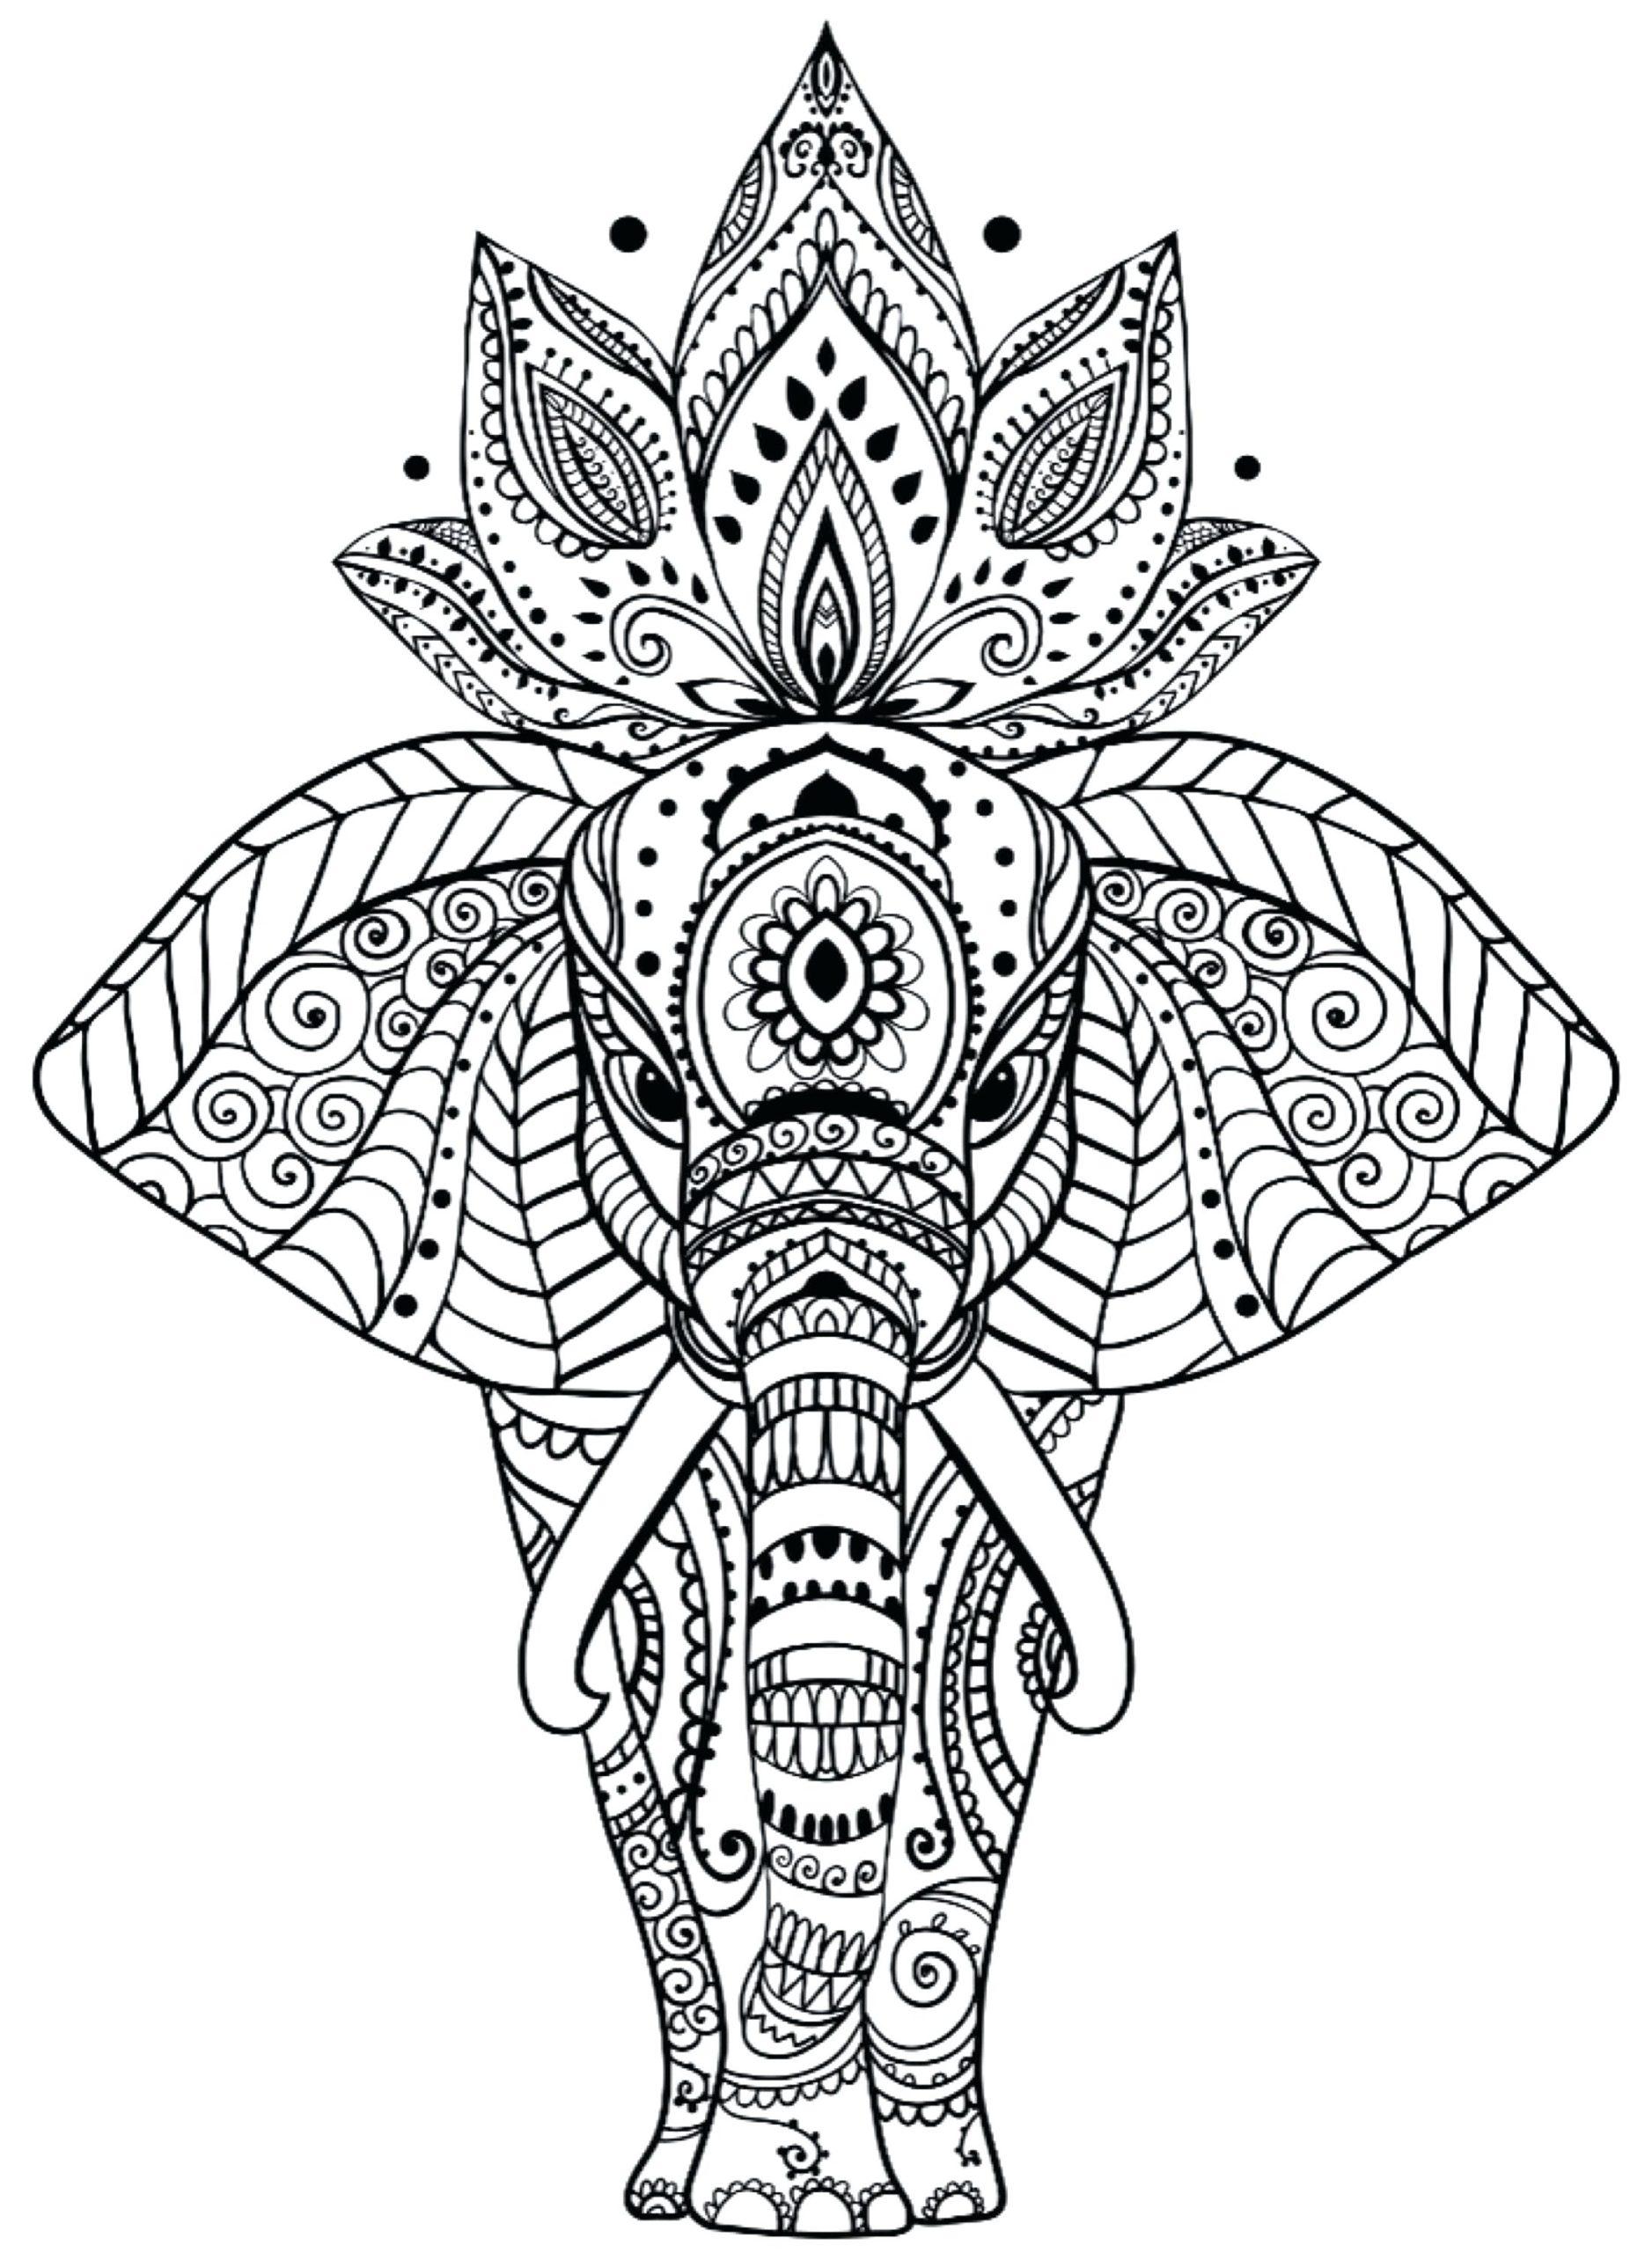 Tranh tô màu voi có nhiều họa tiết và hoa nở trên đầu